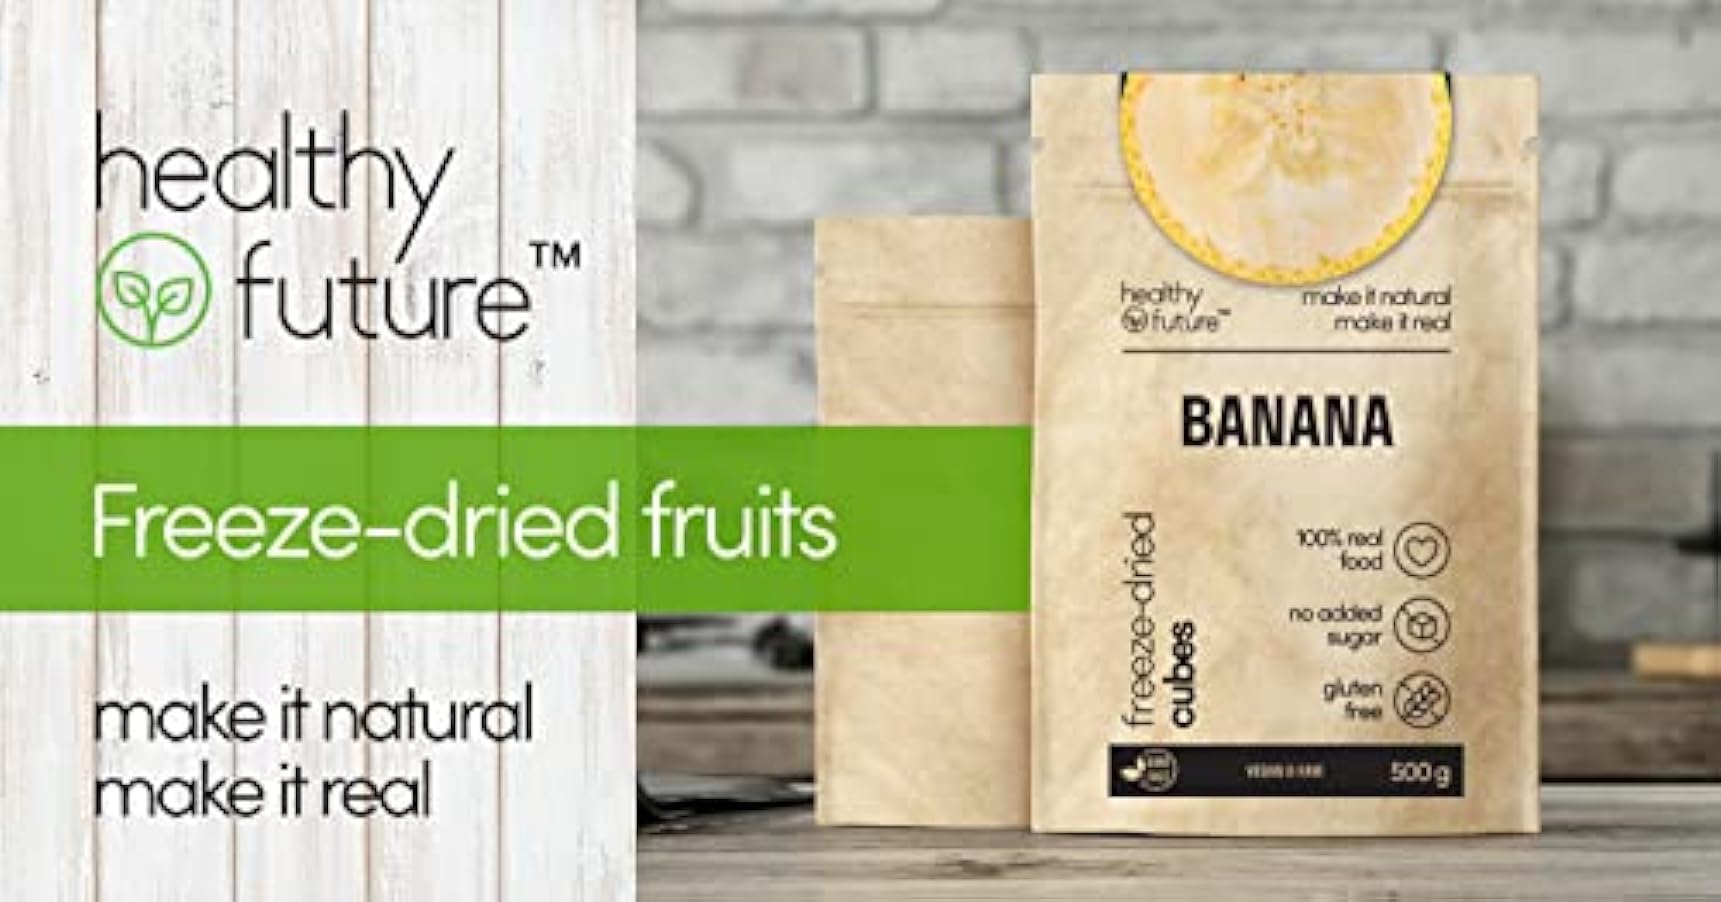 Healthy Future | Banane liofilizzate | Cubetti di frutta liofilizzata, non irradiata | 100% naturale, vegana, kosher | senza glutine, zolfo, conservanti, zuccheri aggiunti, OGM | 1 confezione da 500 g 190947865